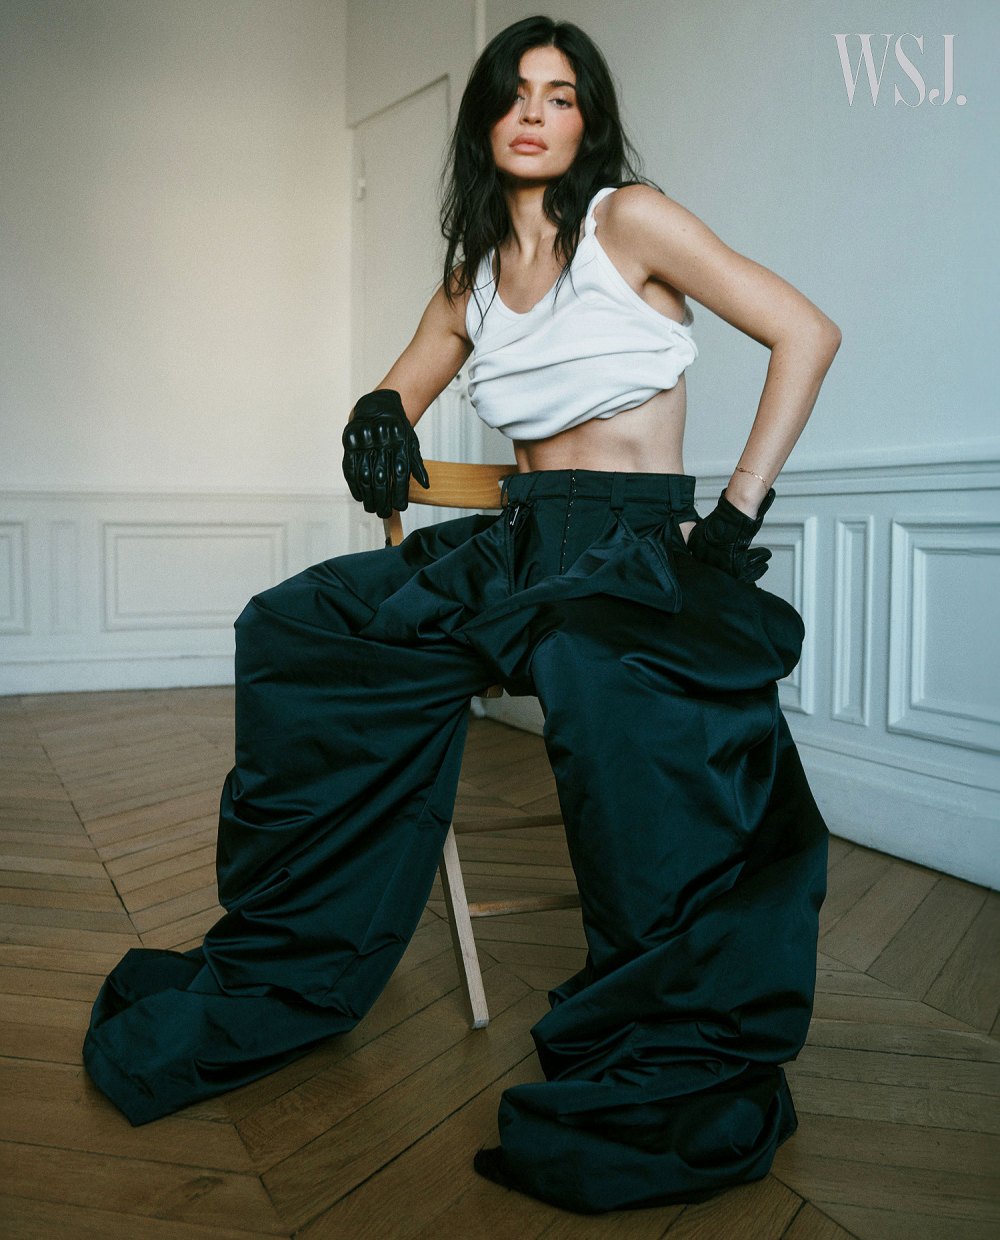 Kylie Jenner verrät weitere Details zur Fashion Line